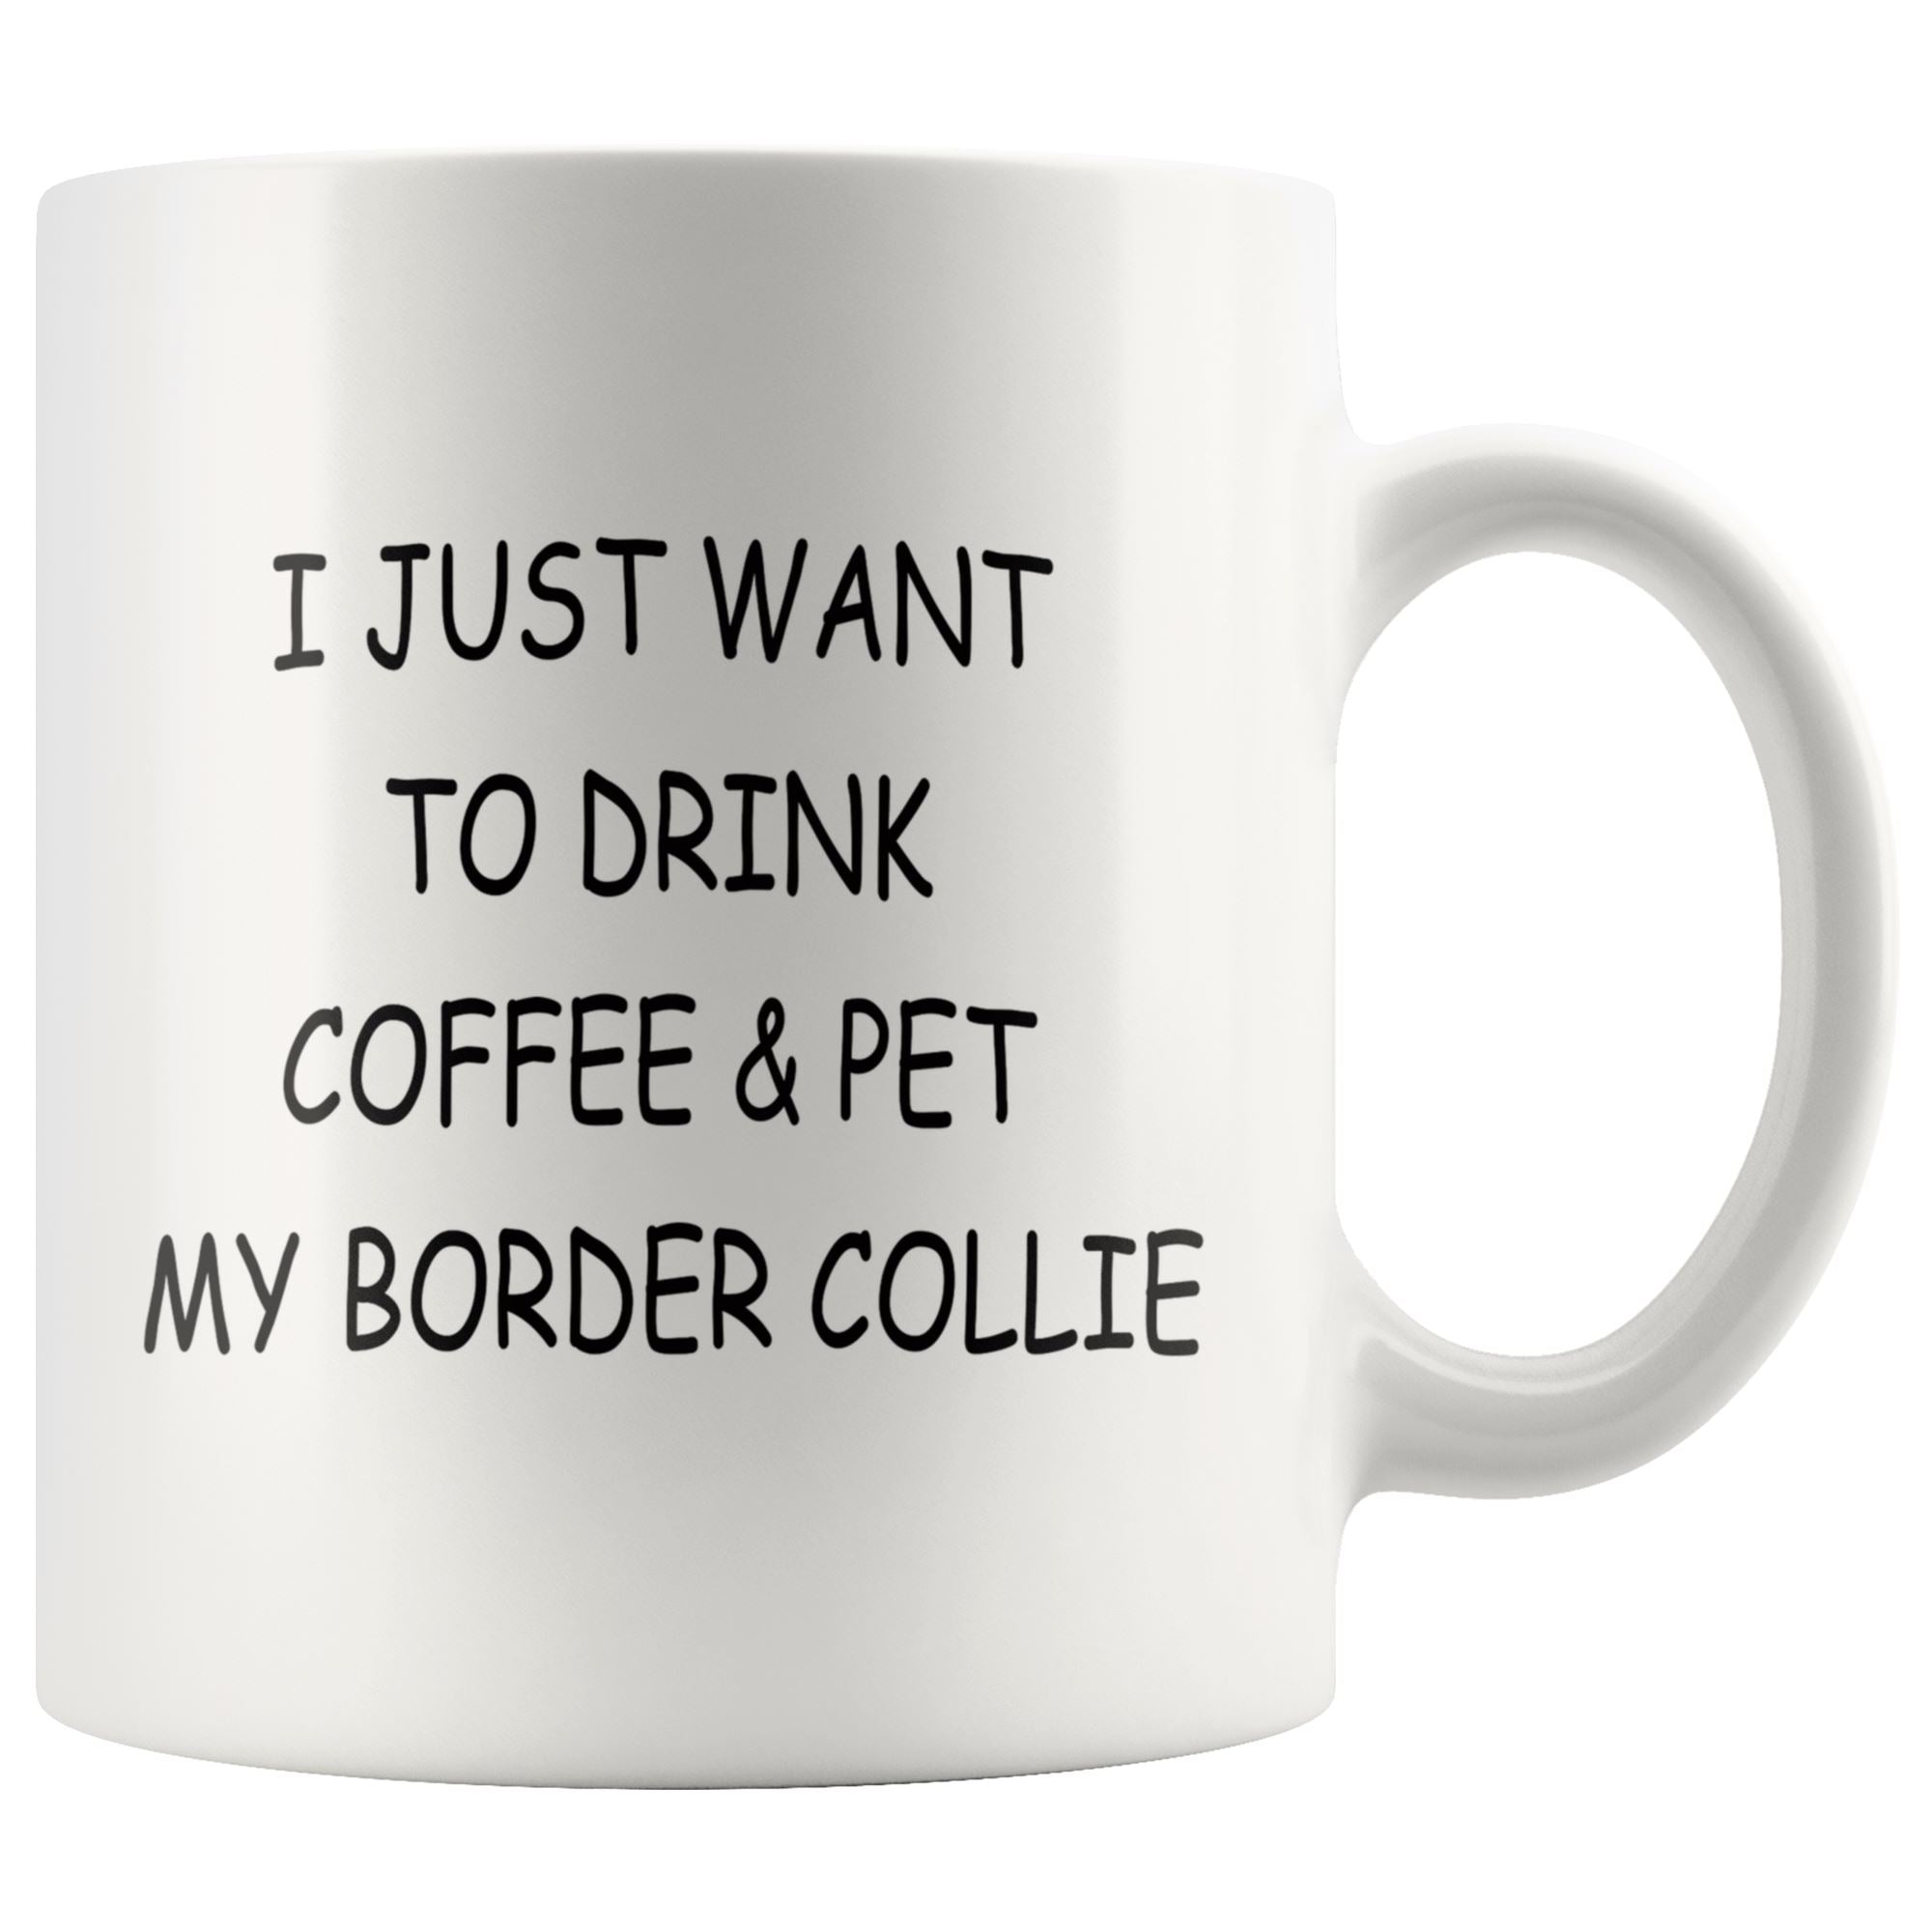 Border Collie mug Drinkware teelaunch 11oz Mug 